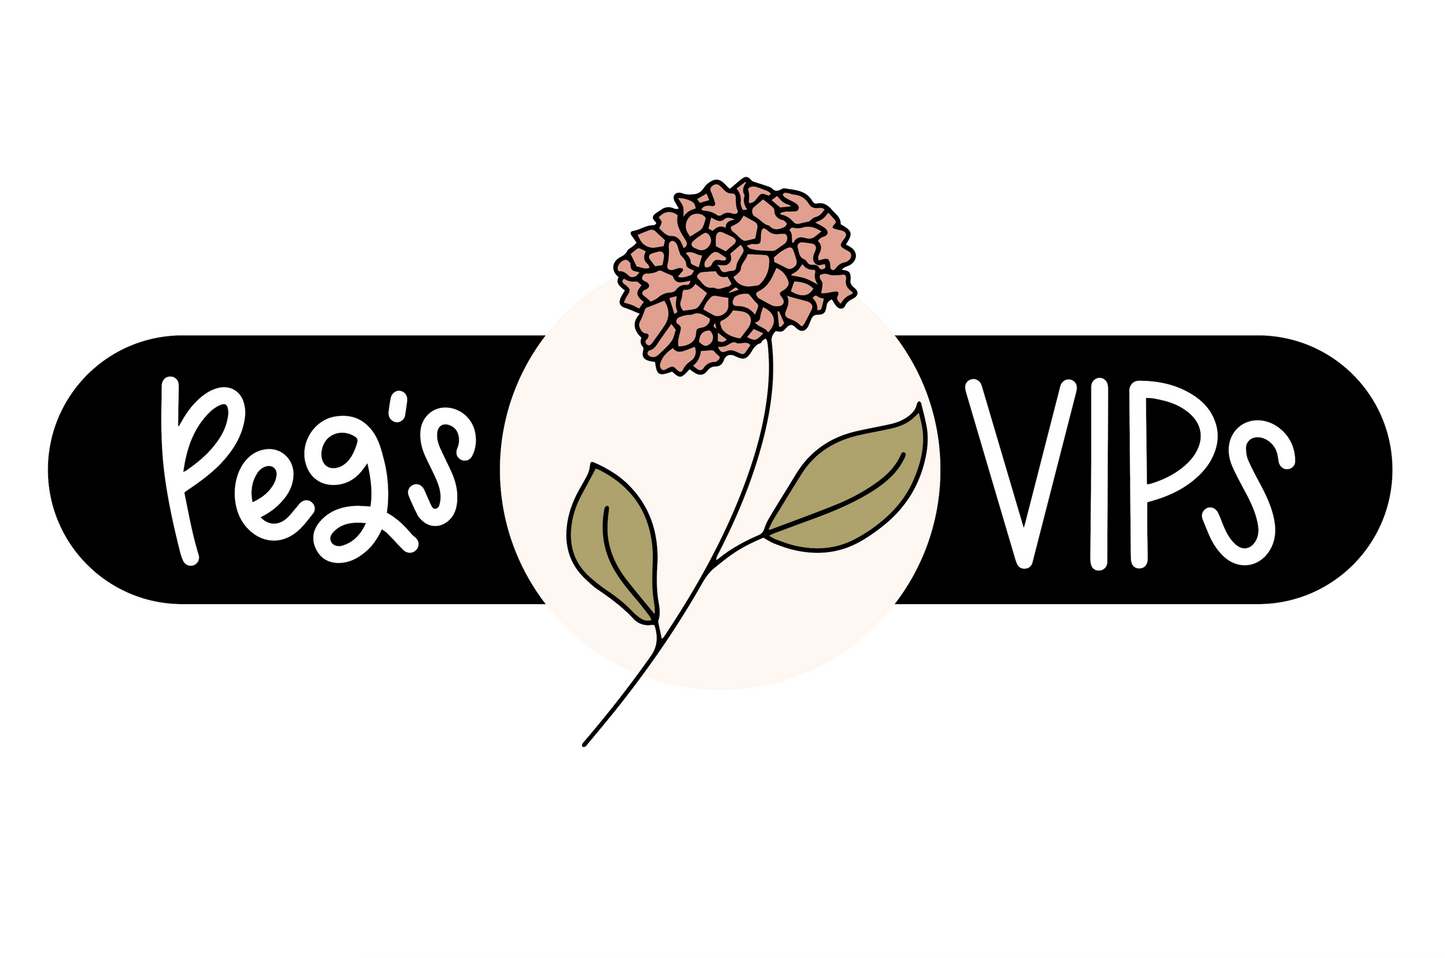 Peg's VIPs